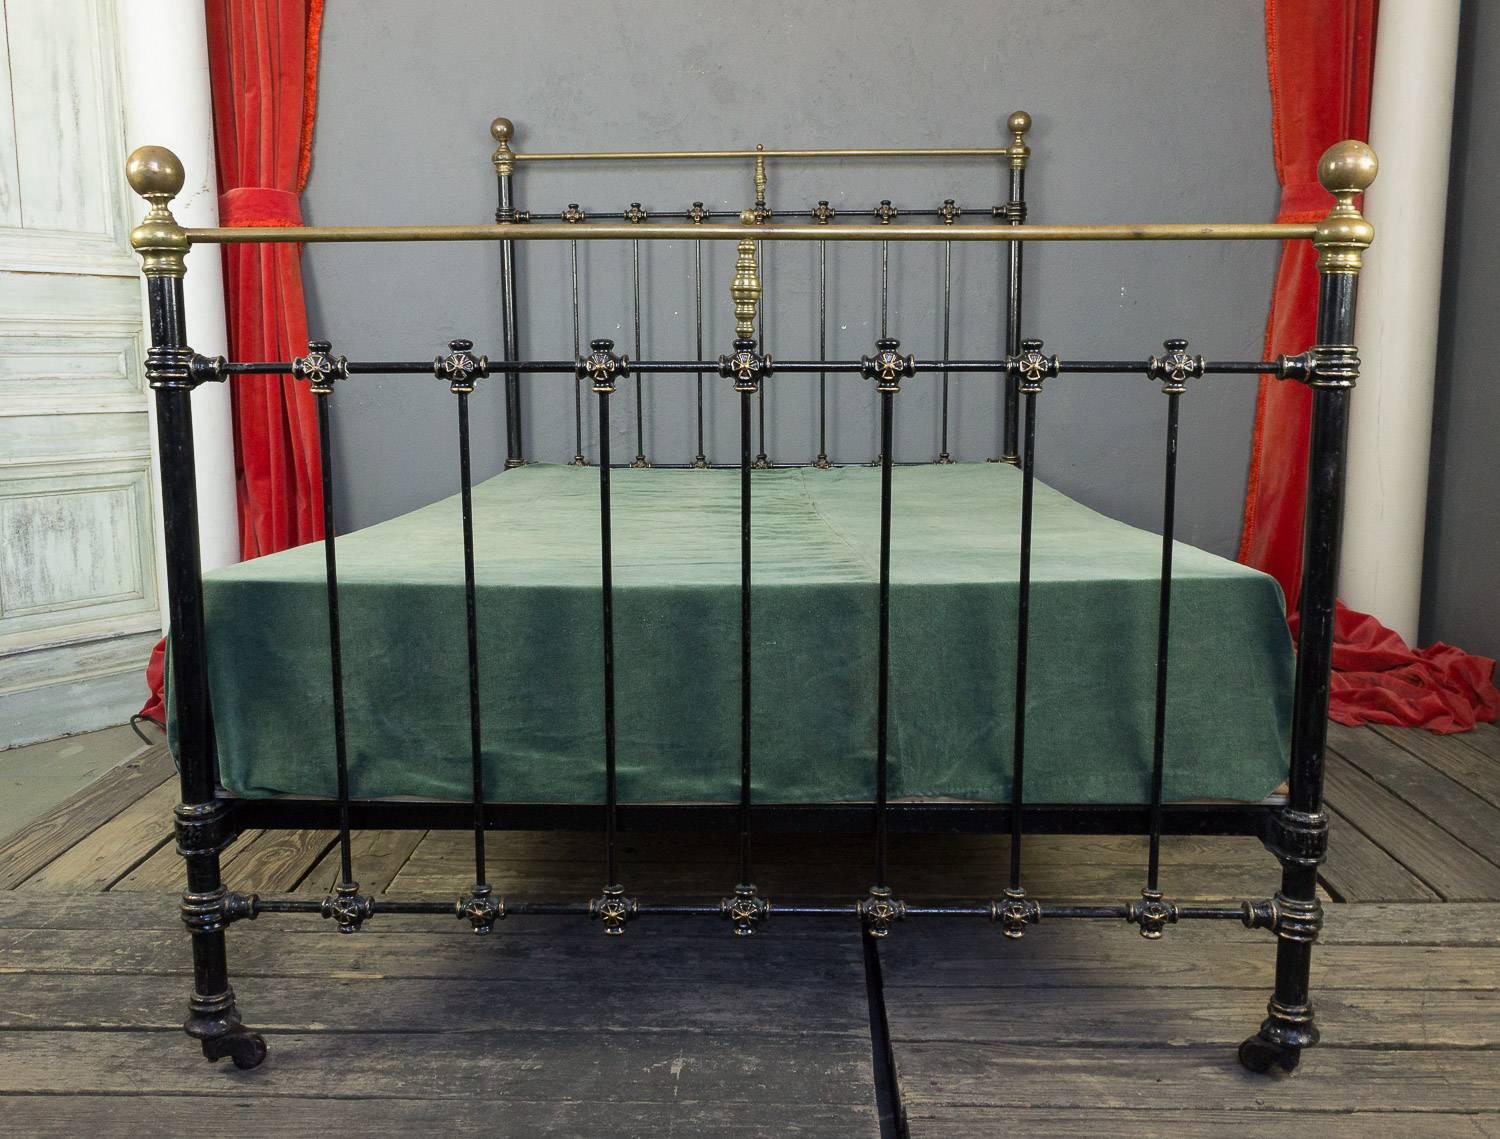 1920s bed frame